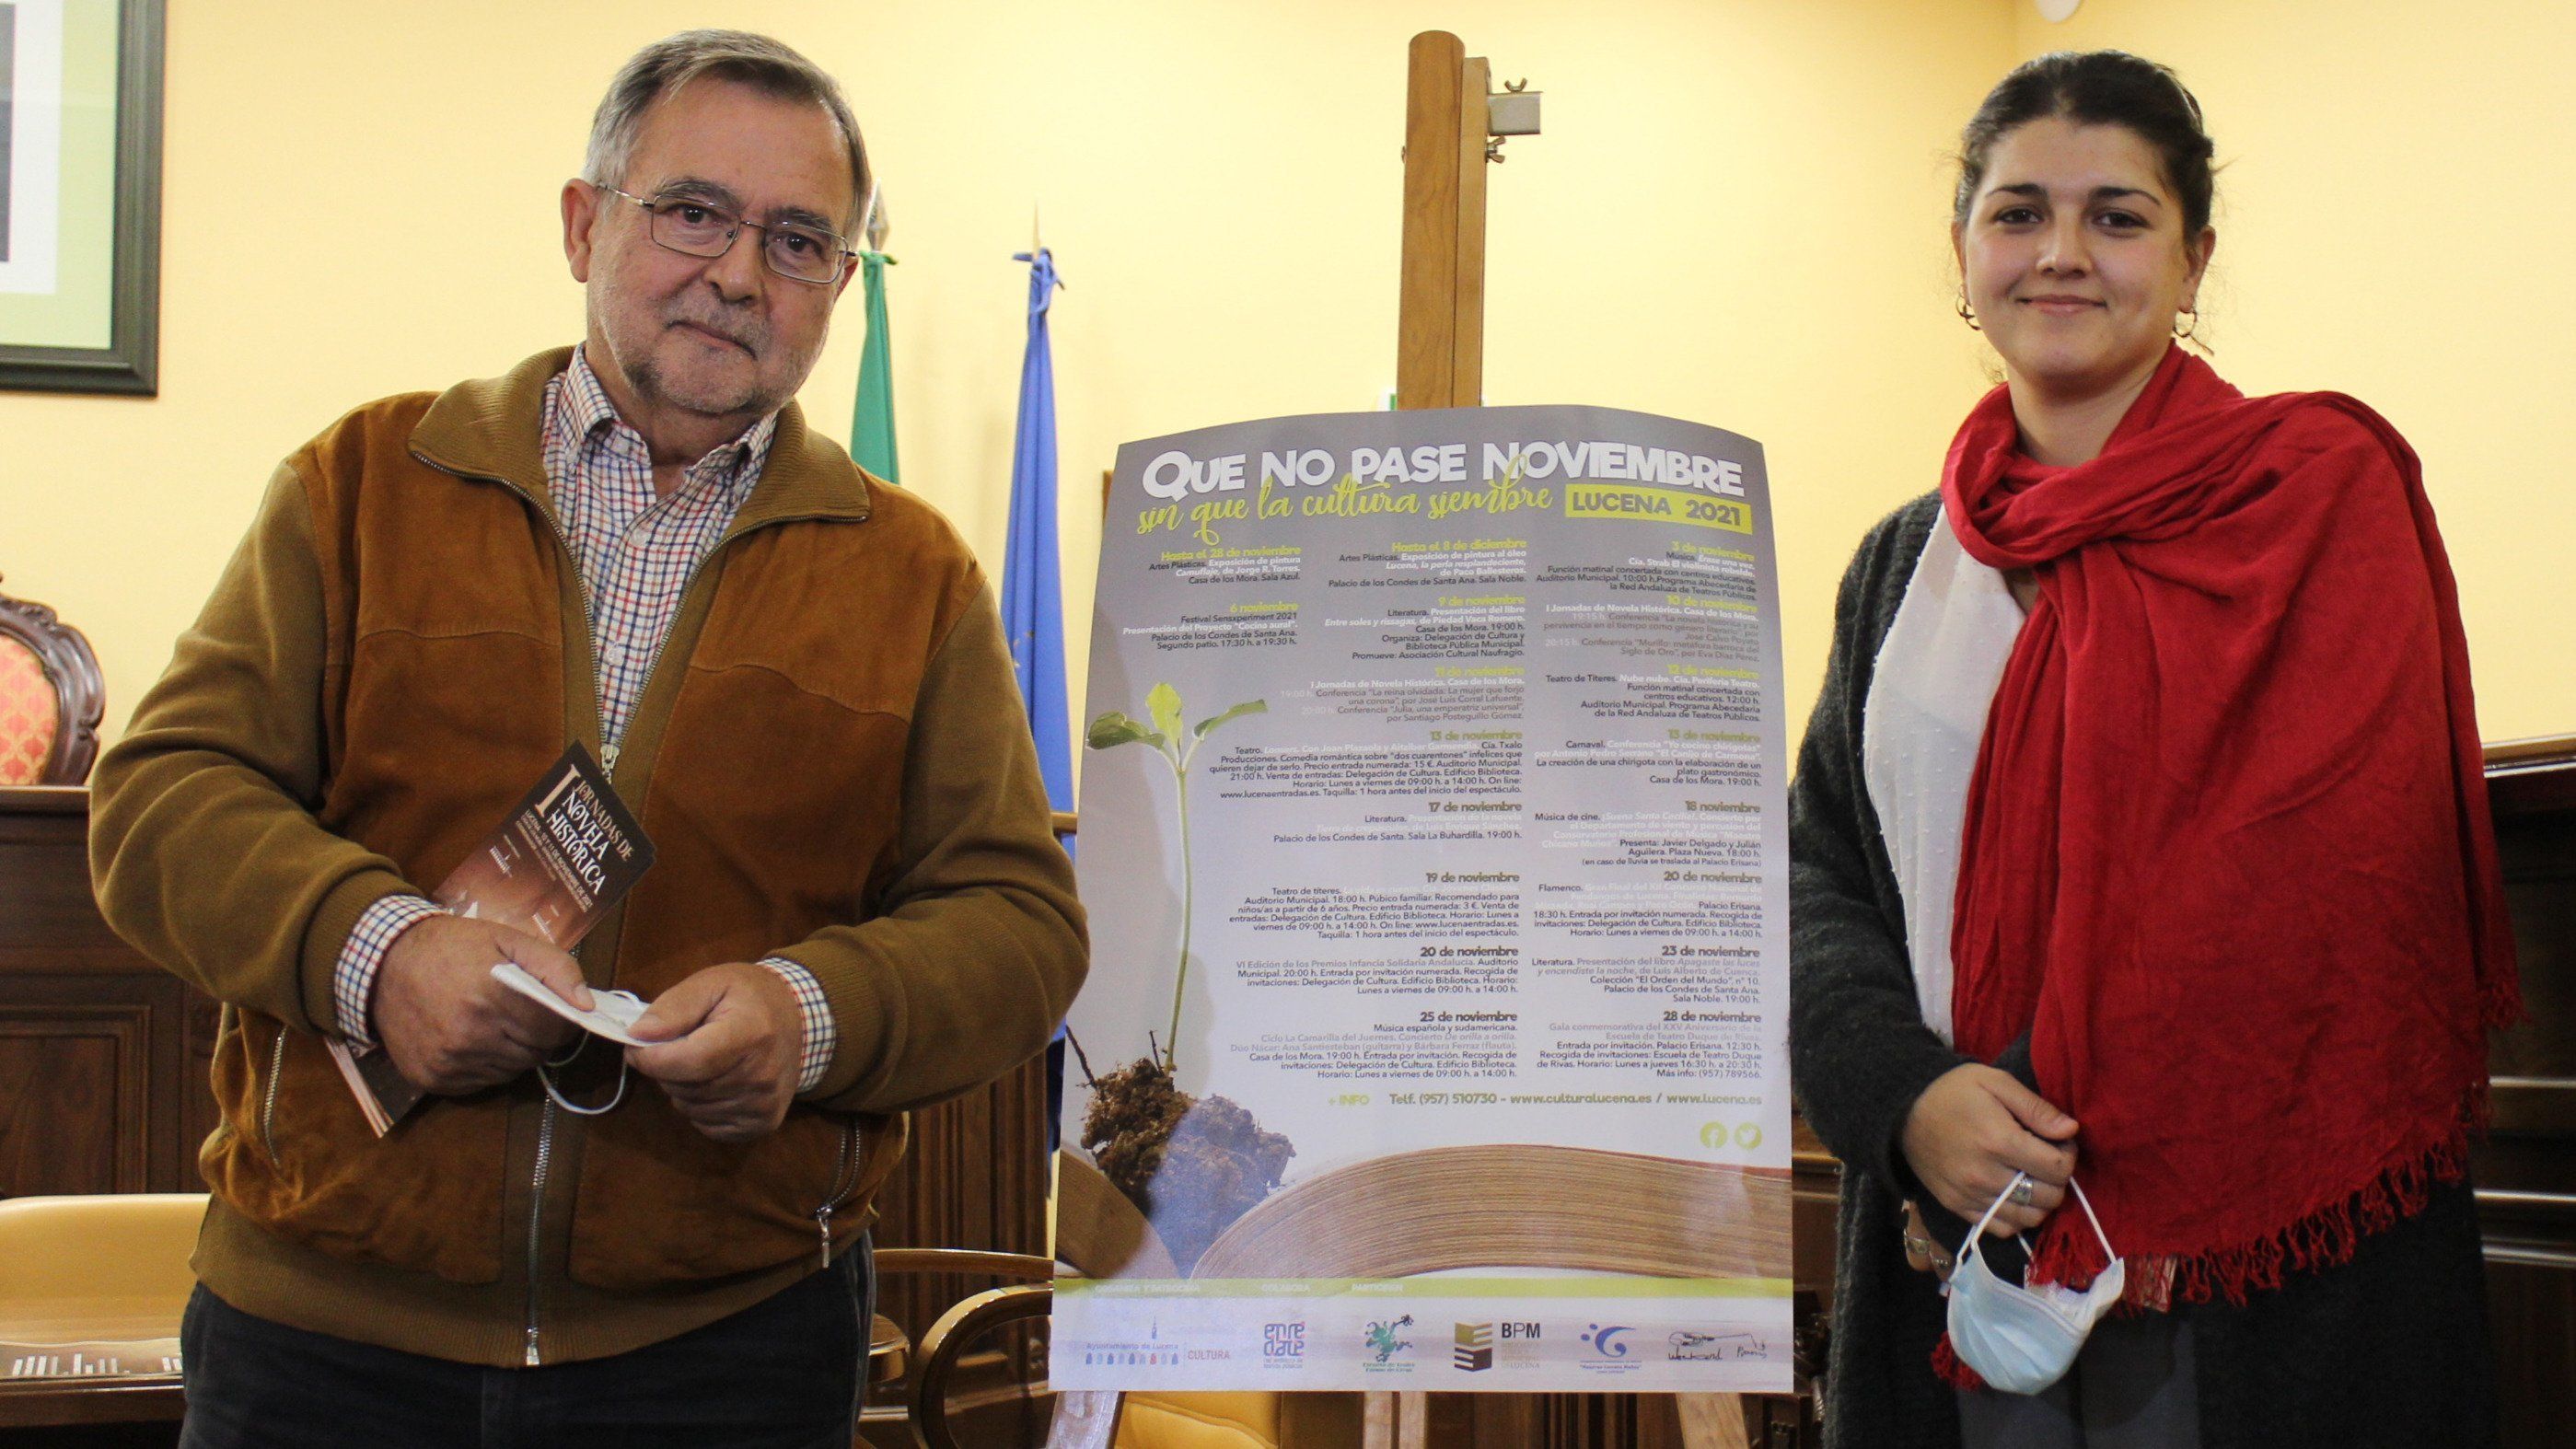  José Calvo Poyato y Mamen Beato en la presentación de las actividades para noviembre 